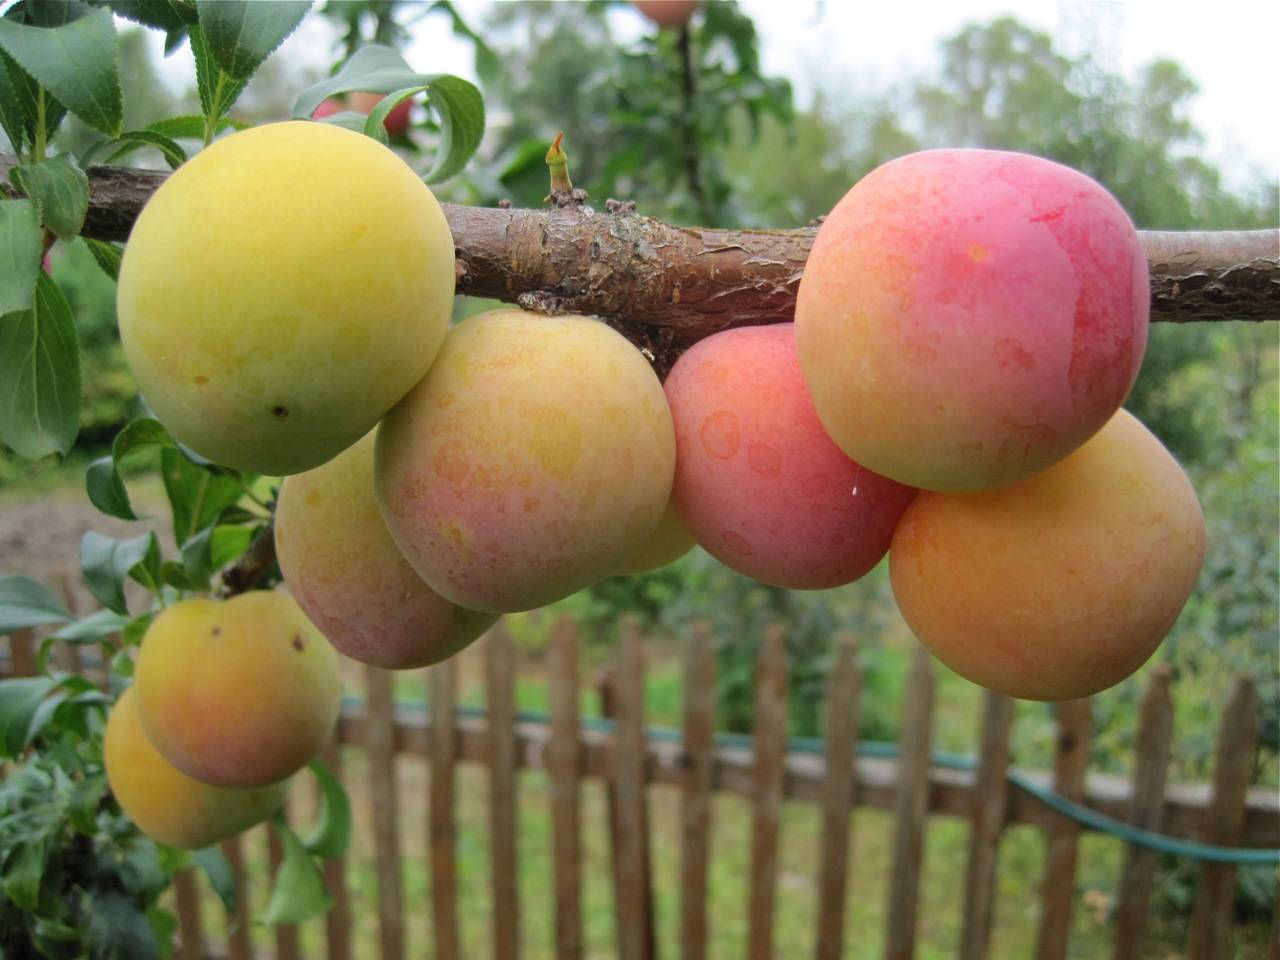 Слива утро: описание популярного сорта плодовых деревьев, правила и особенности выращивания